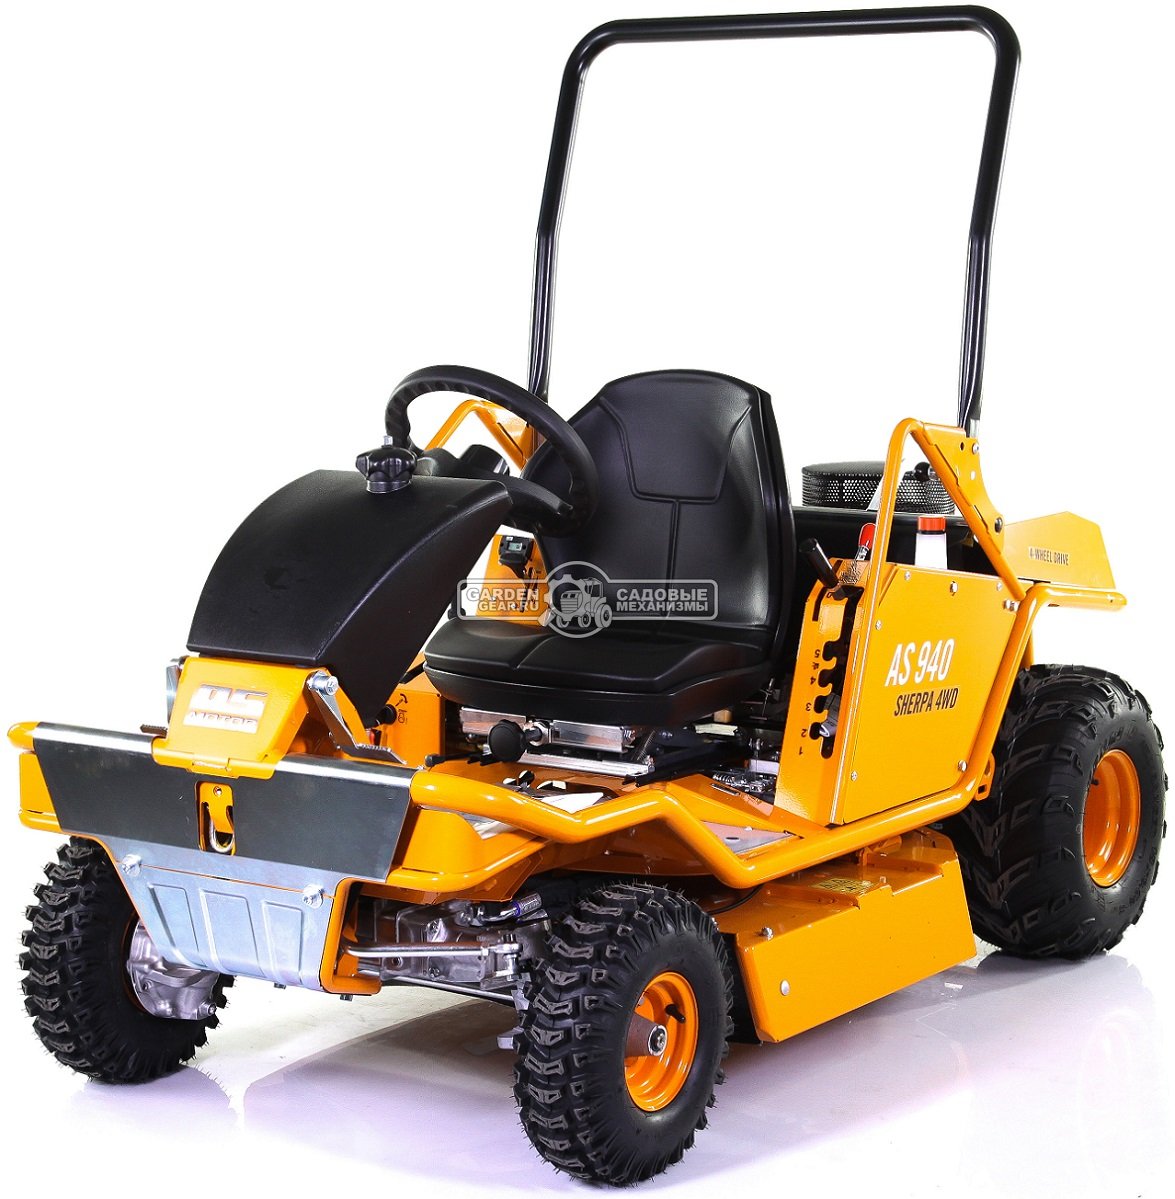 Садовый трактор для высокой травы и работы на склонах AS-Motor 940 Sherpa 4WD (GER, 90 см, B&S Pro, 724 см3, дифференциал, задний выброс, 290 кг)